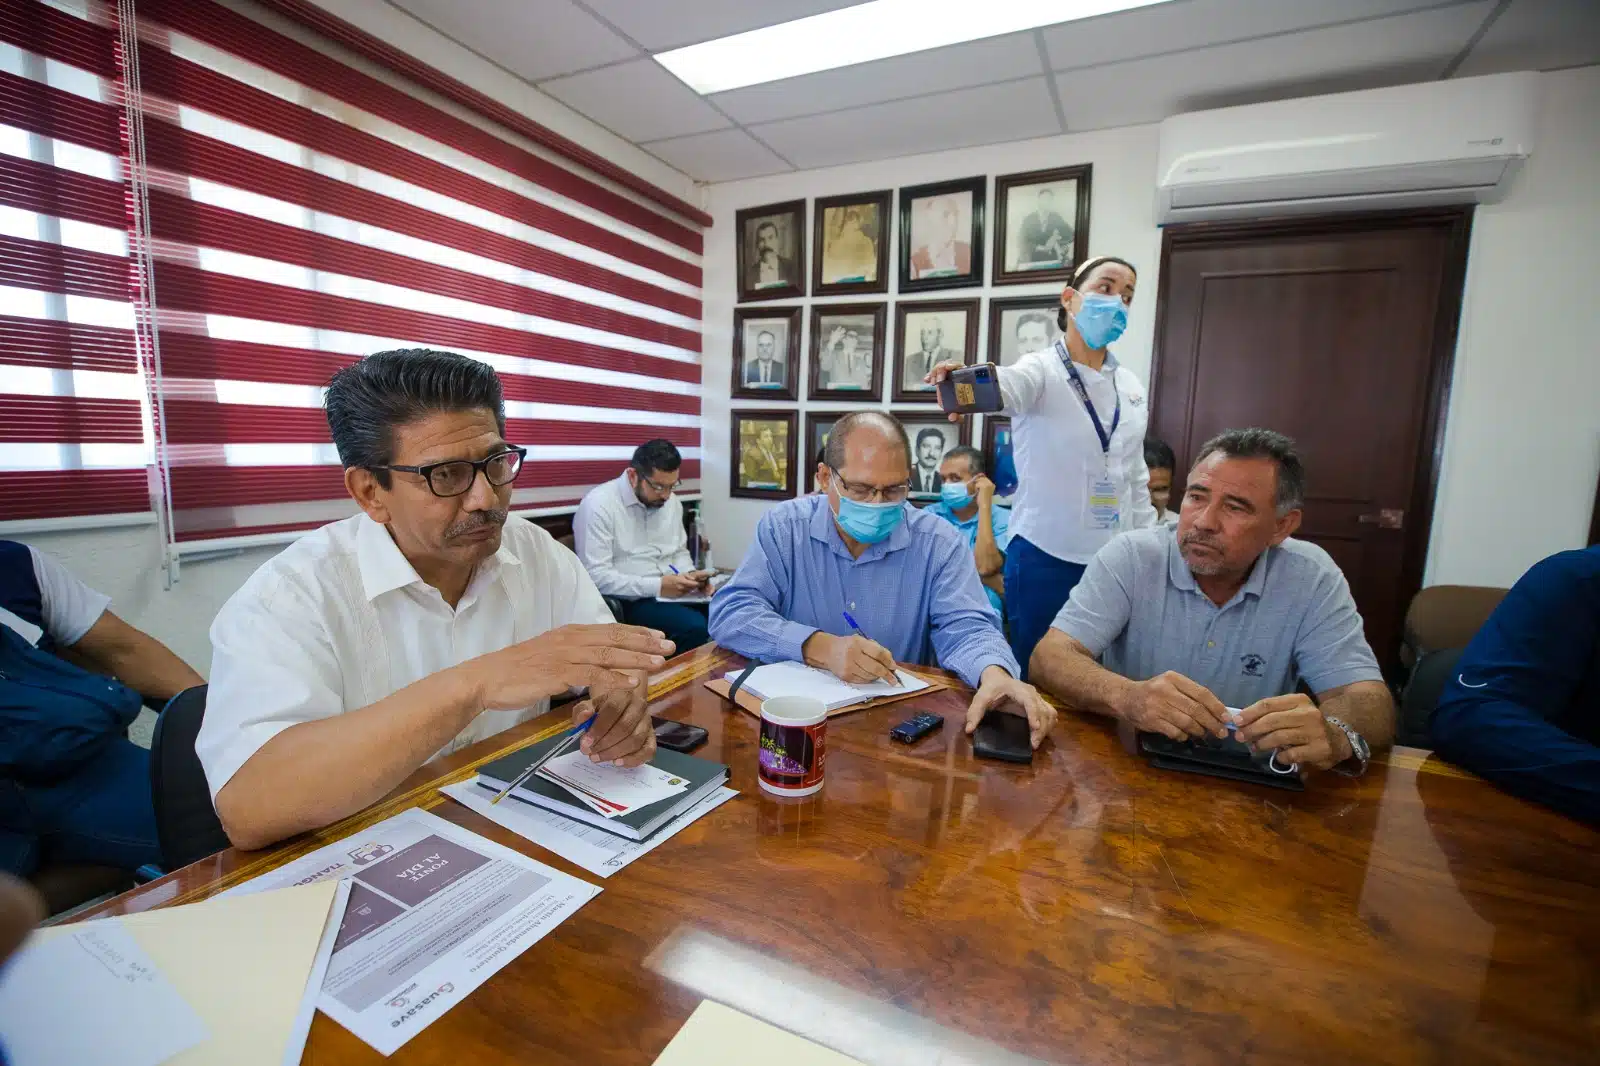 El alcalde Martín Ahumada Quintero informó que sostuvo un diálogo con el gobernador Rubén Rocha Moya